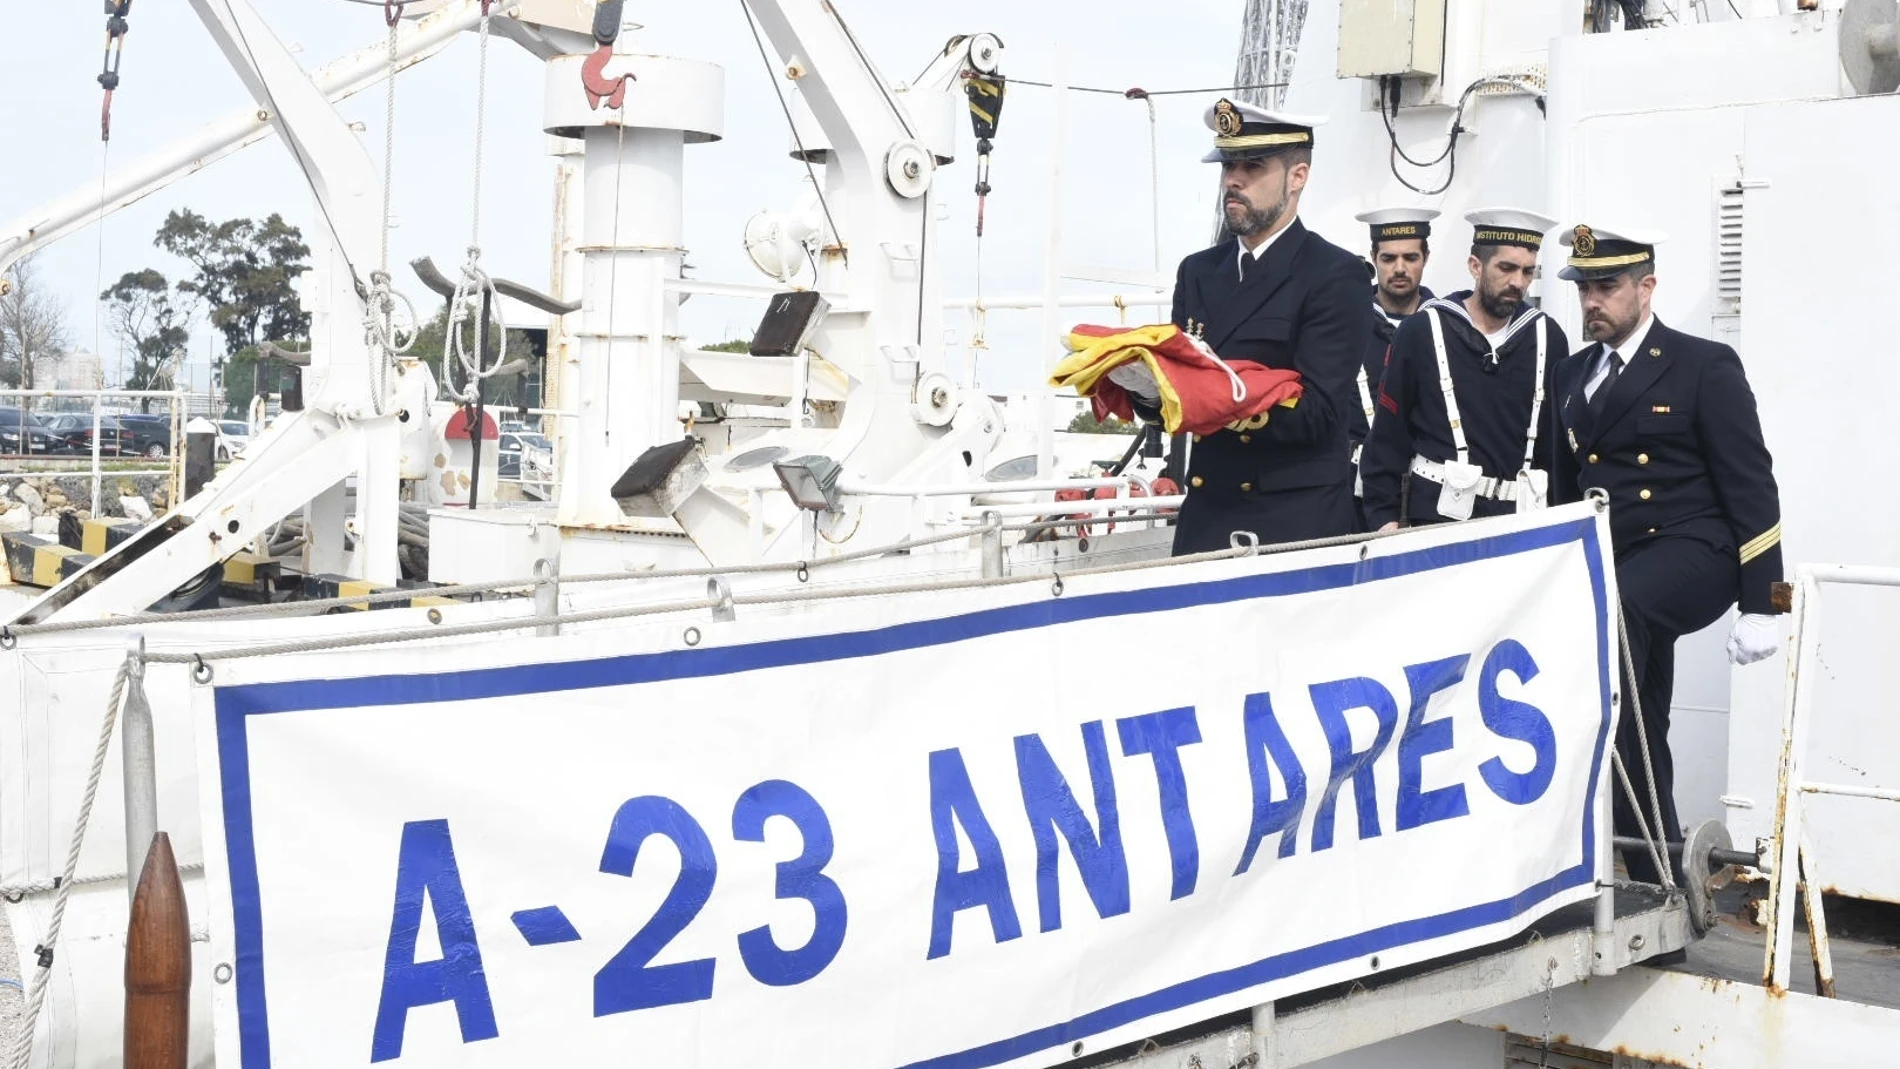 El buque hidrográfico Antares, en el acto de baja tras 50 años de servicio